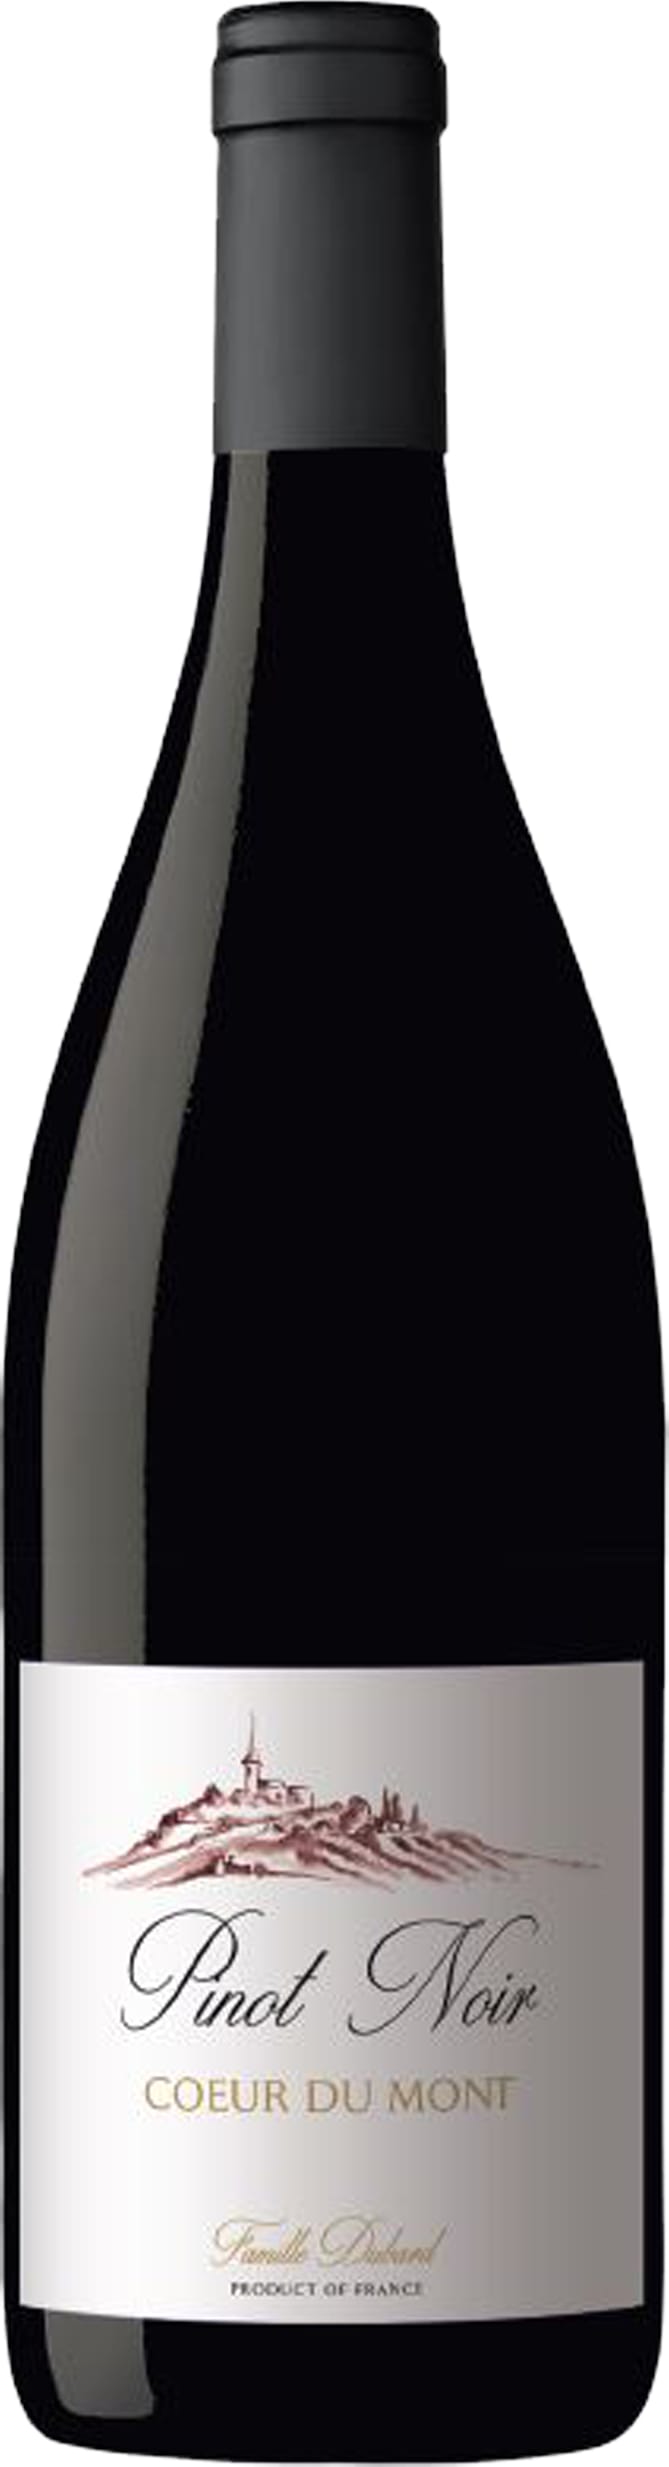 Vignobles Dubard Coeur du Mont Pinot Noir 2022 75cl - Buy Vignobles Dubard Wines from GREAT WINES DIRECT wine shop